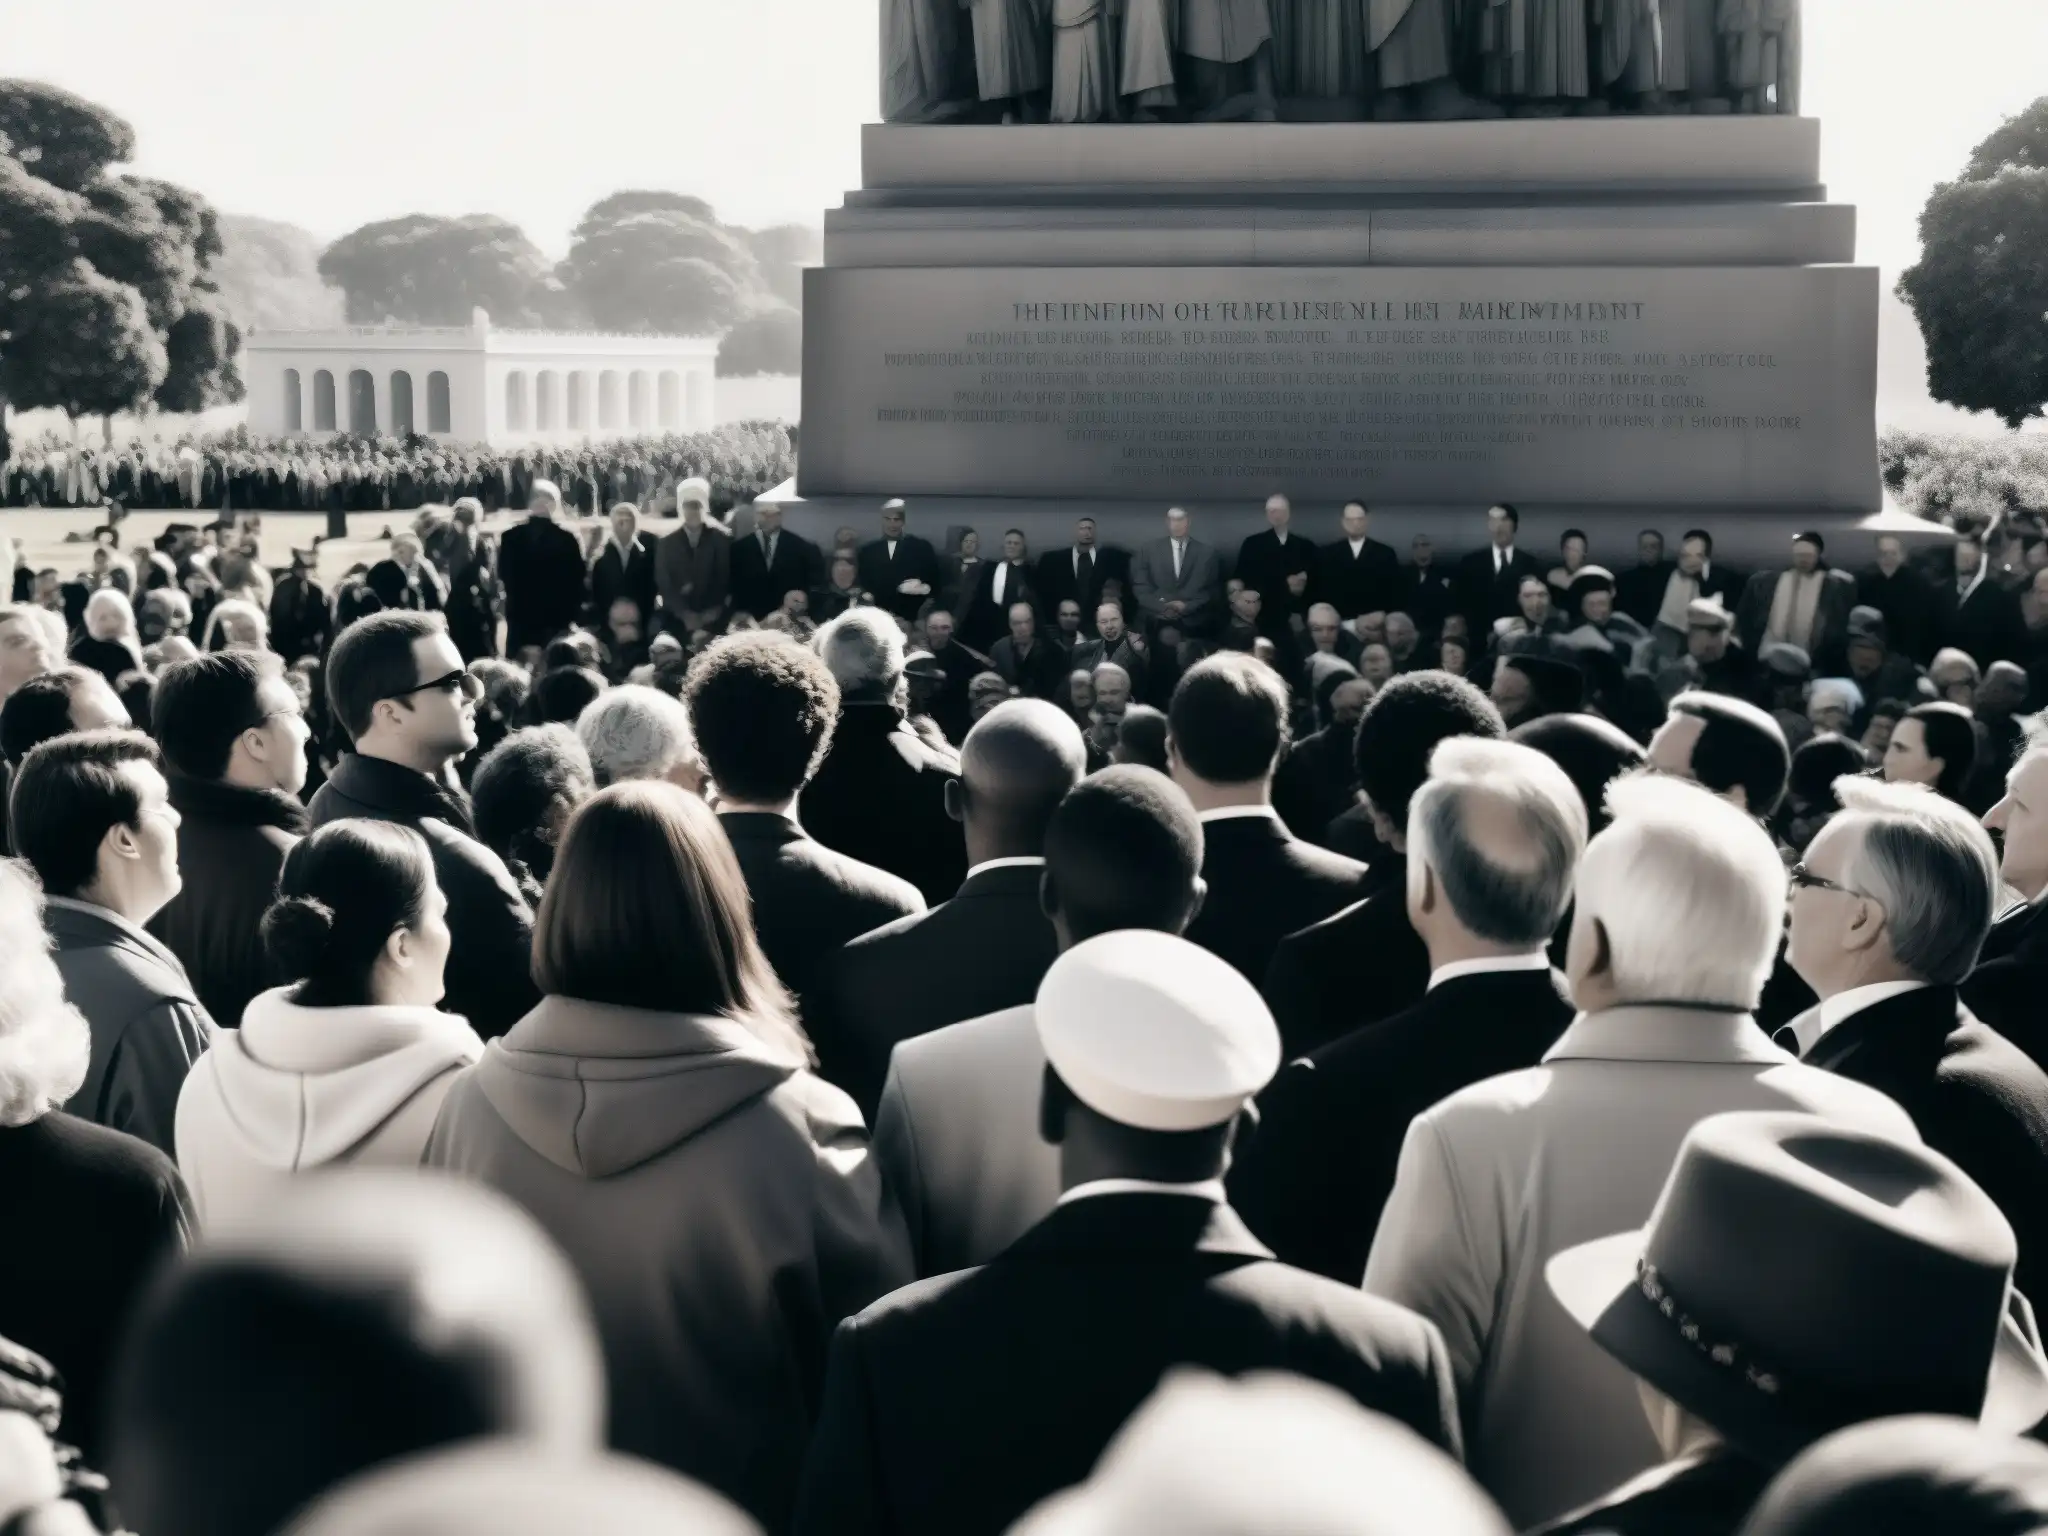 Multitud emocionada escucha discurso en monumento histórico, reflejando proceso psicológico mitificación eventos históricos